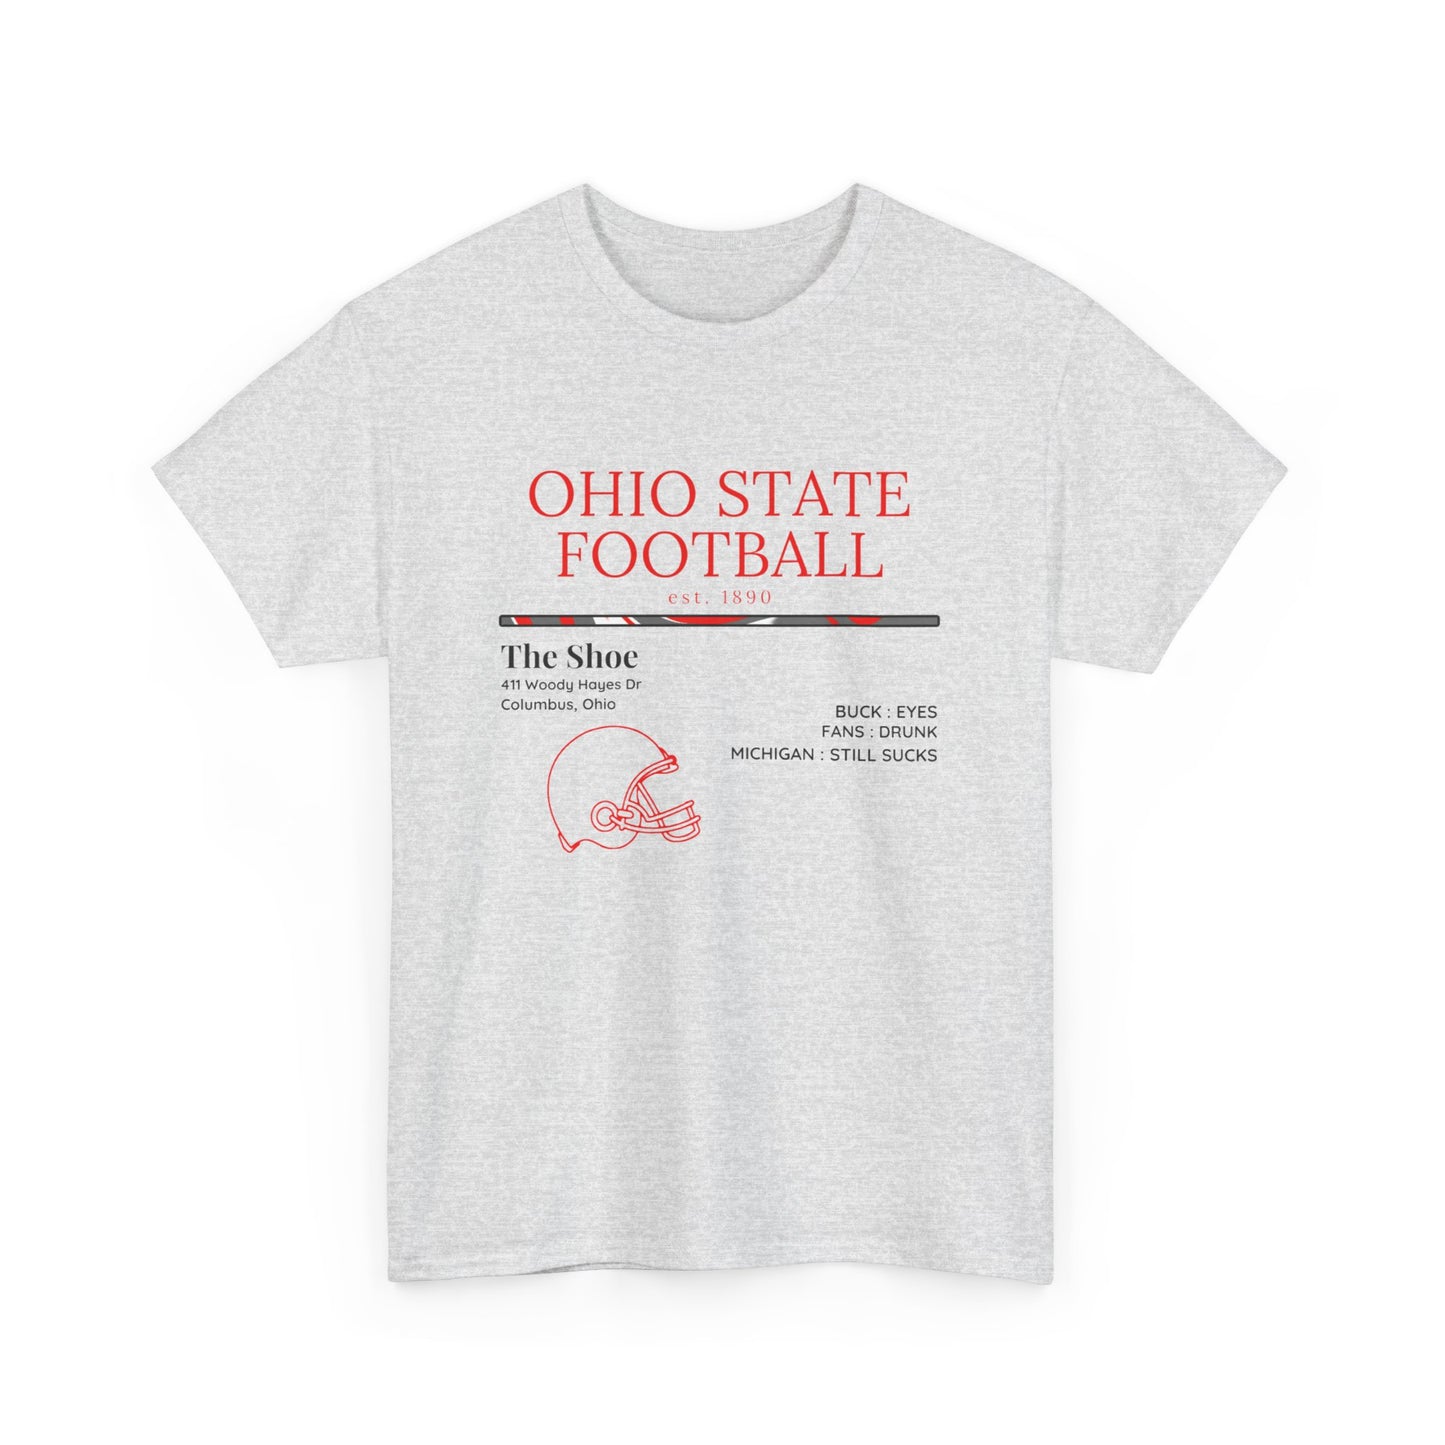 Ohio State Football Tshirt